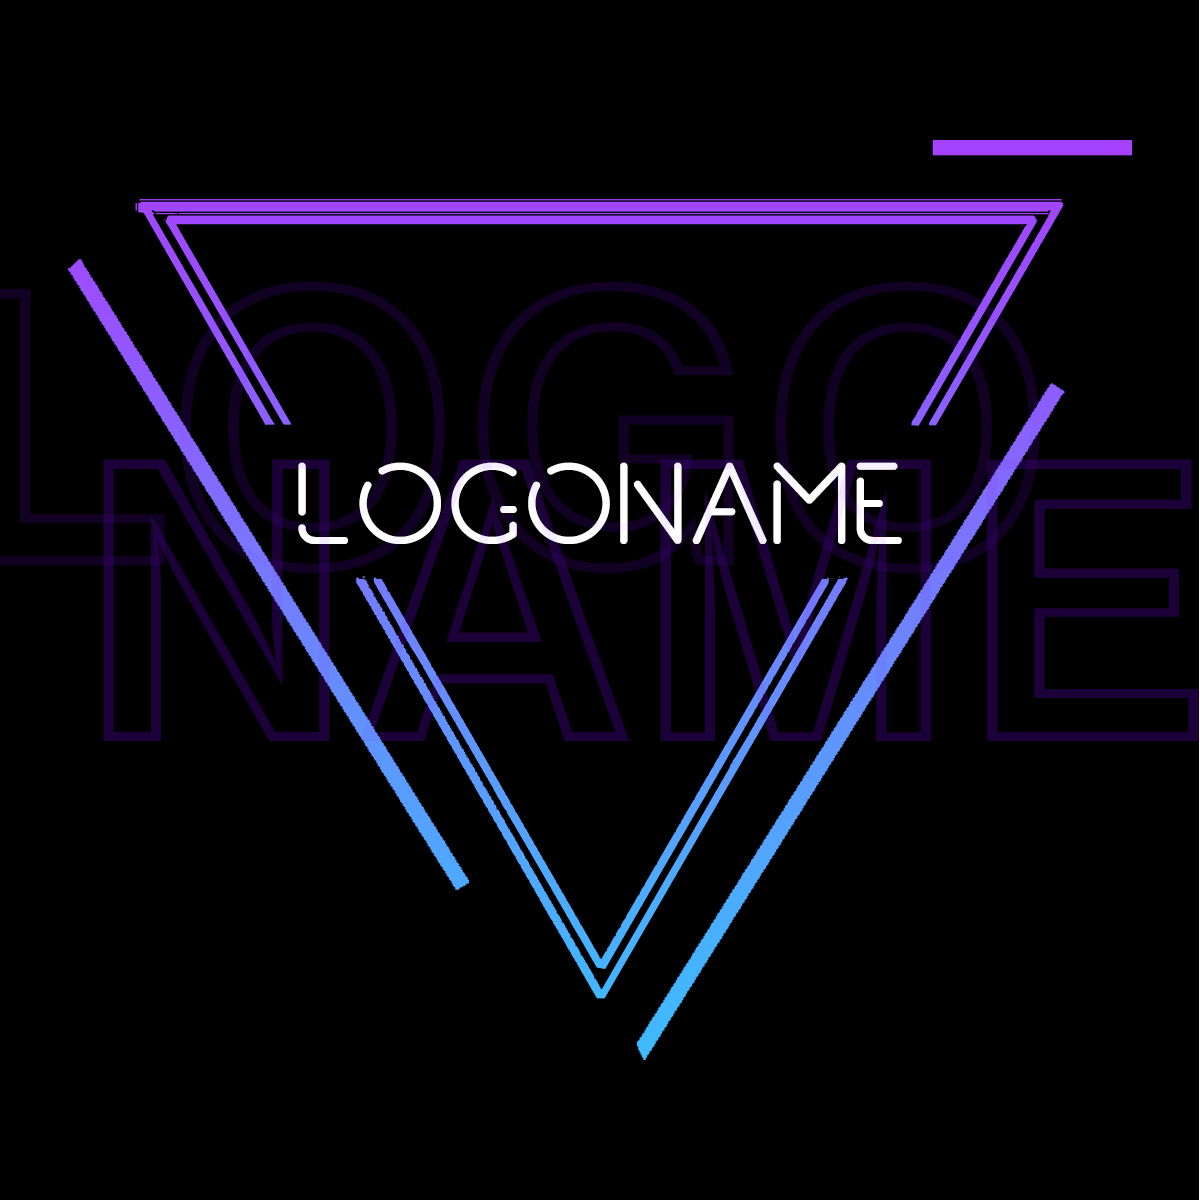 Логотип: Неоновый треугольник